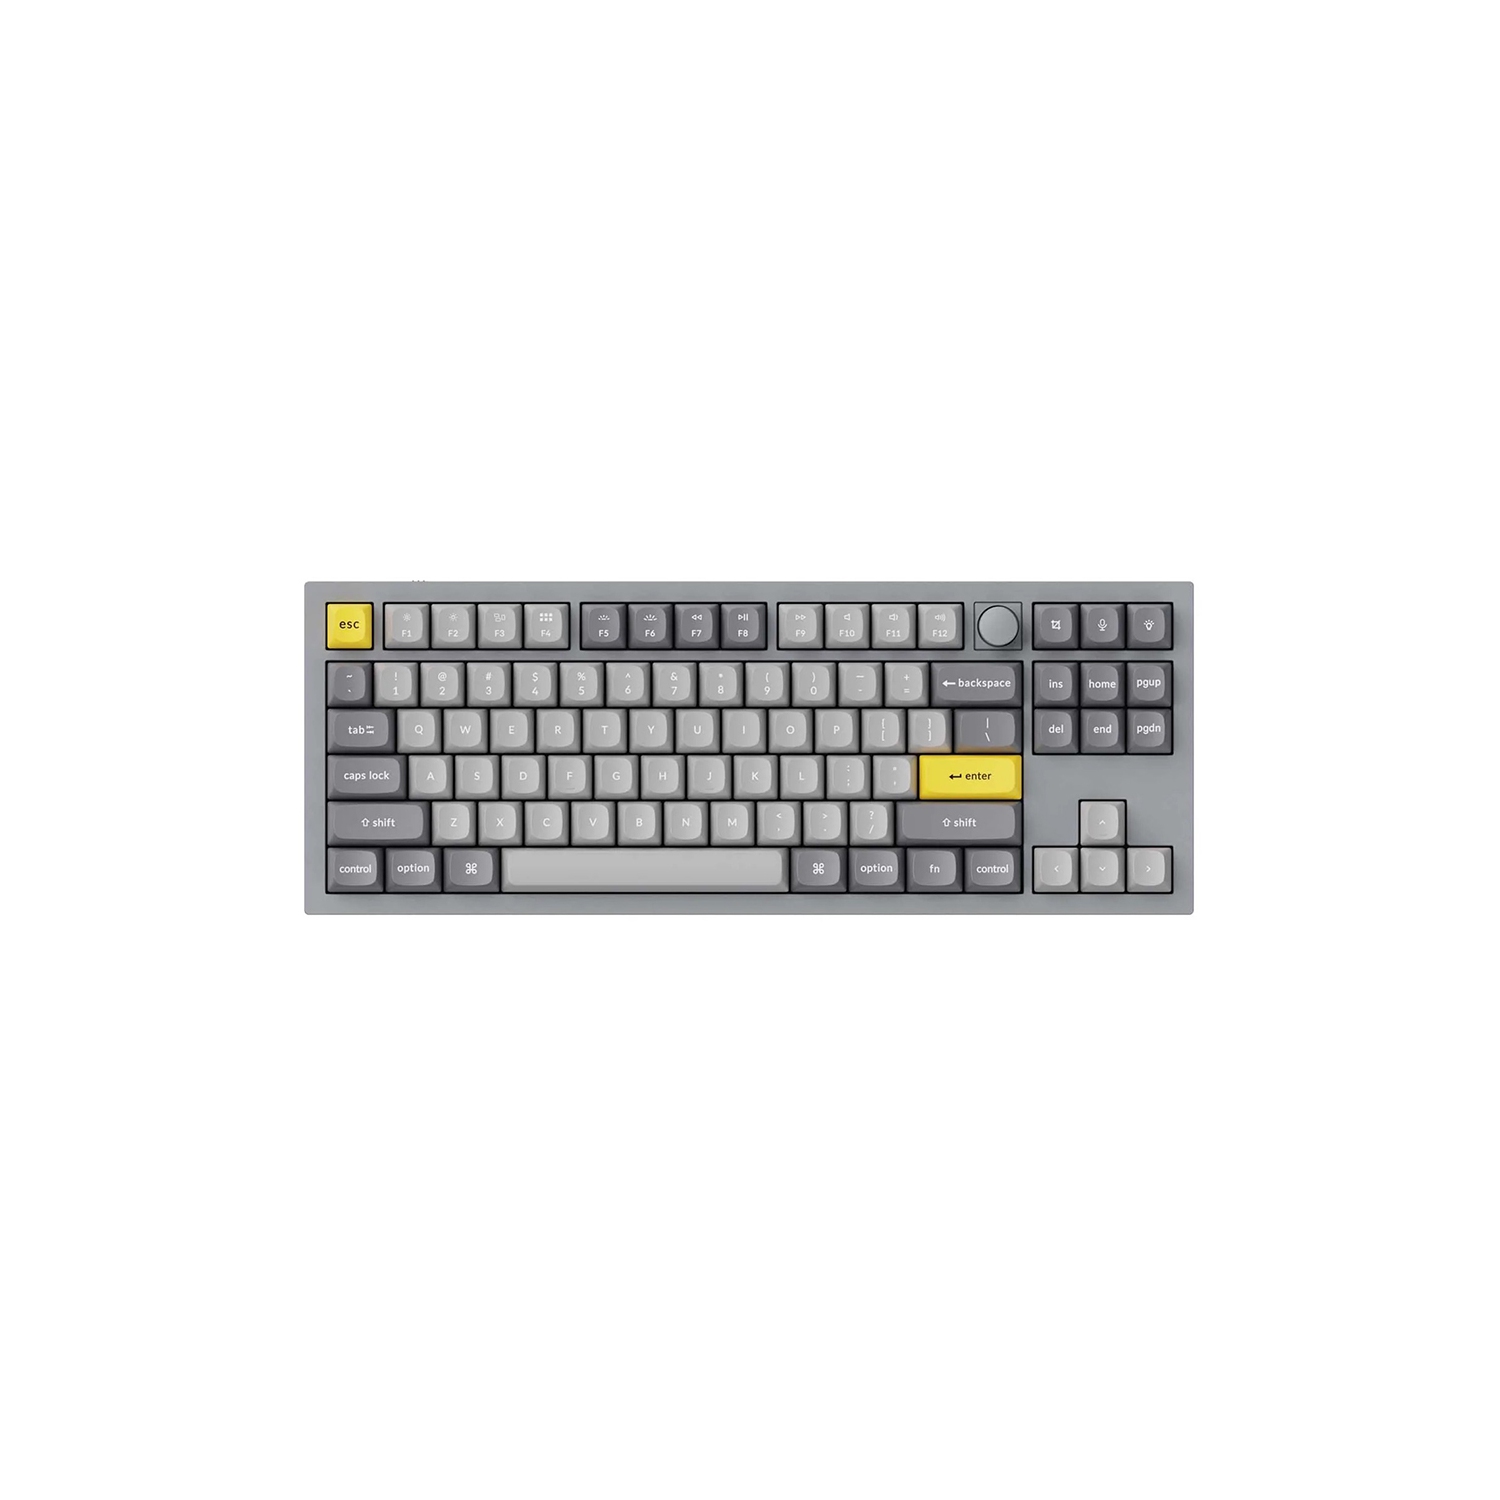 Keychron Q3 Hotswap Mechanical Keyboard - RGB - Aluminum Frame - Grey - with Knob - Gateron Pro Brown - TKL Layout - Windows Mac OS (Q3-N3)